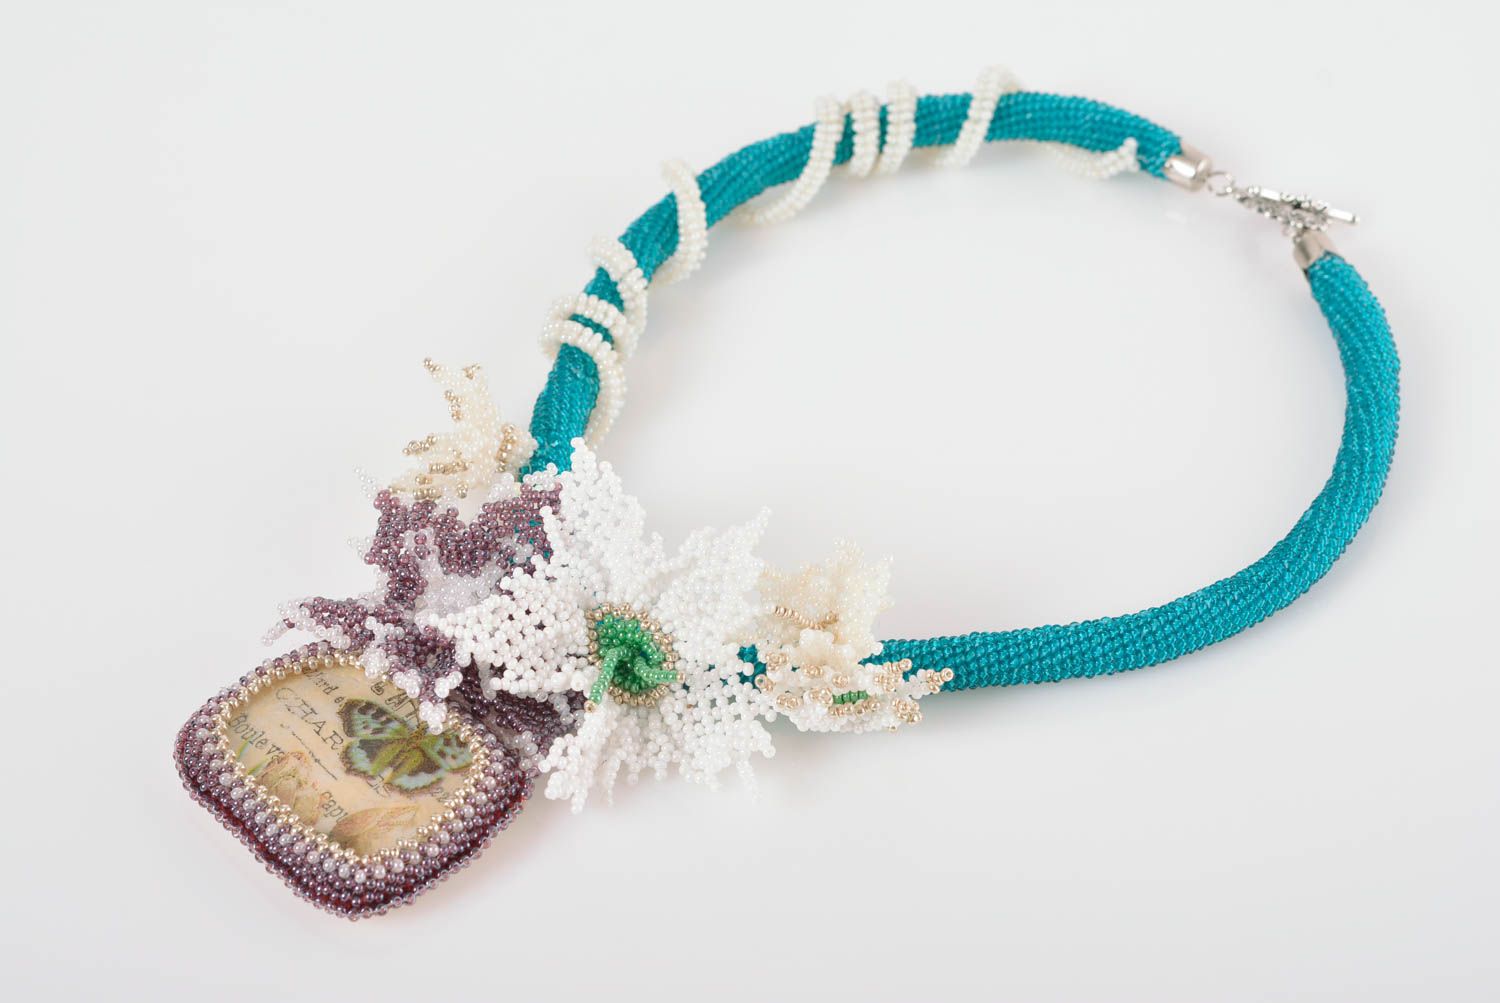 Ожерелье из бисера с подвеской декупаж нежное красивое голубое с белым стильное  фото 1